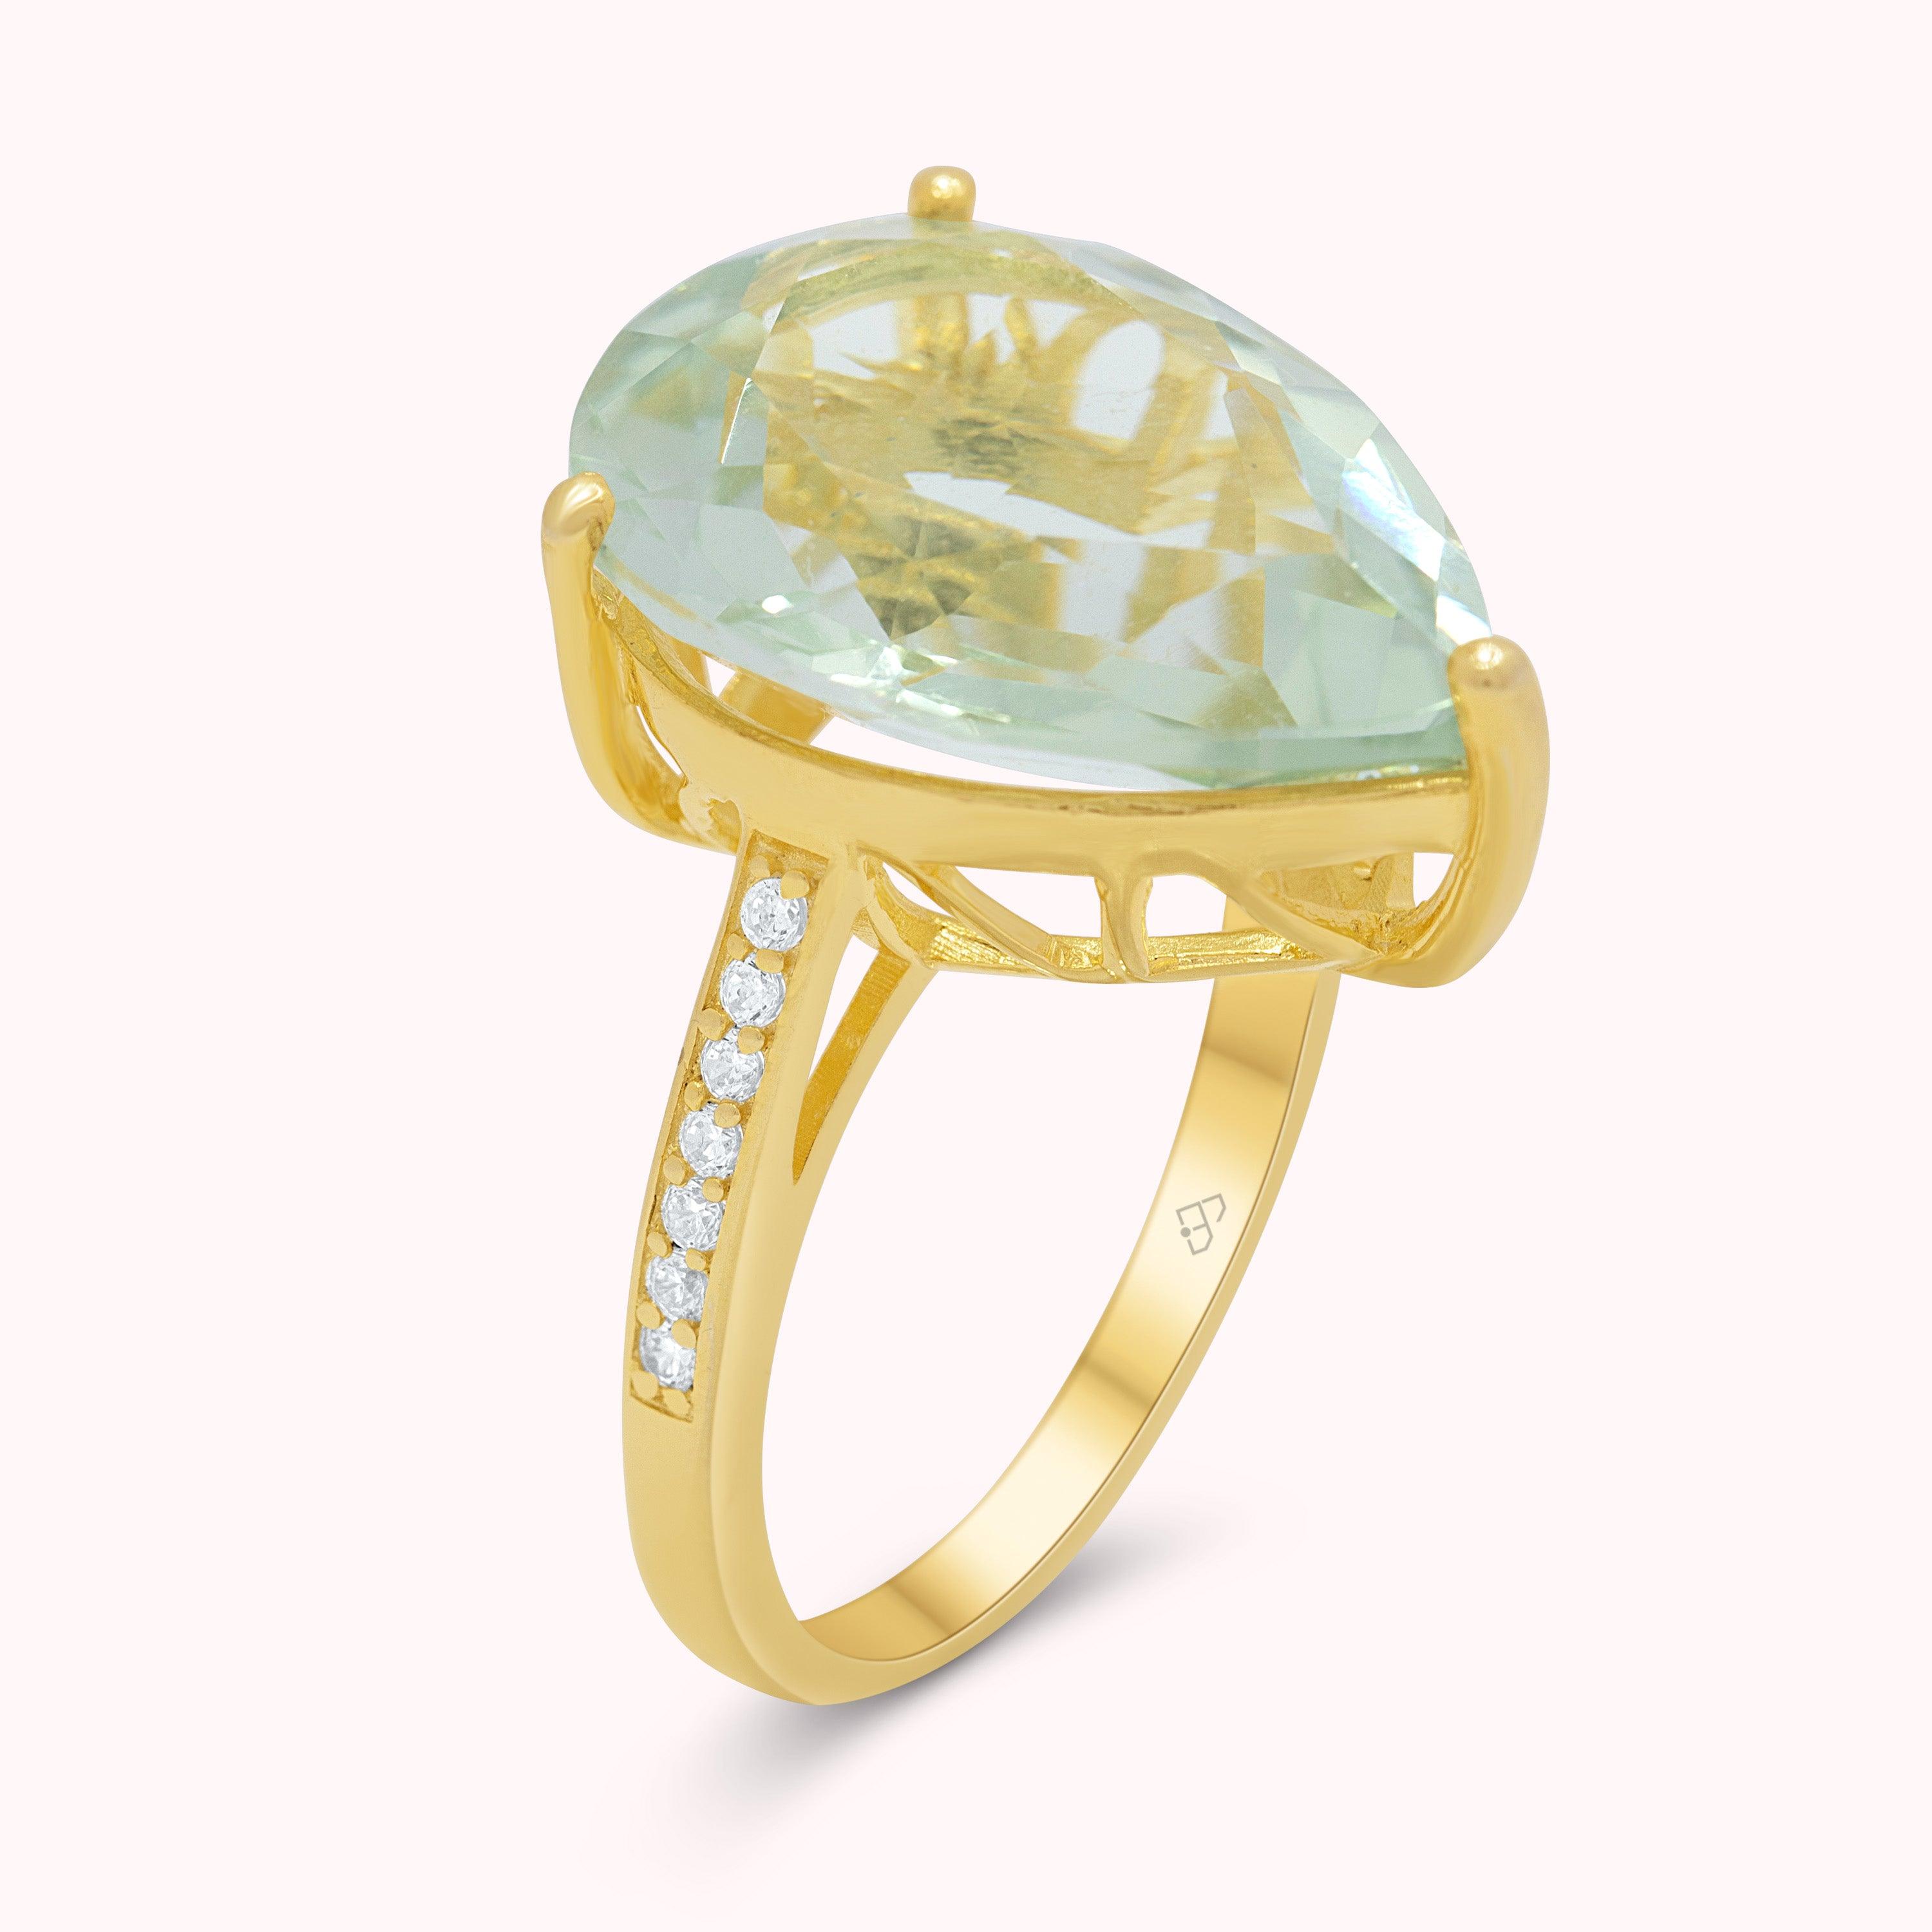 Impresionante anillo de amatista verde natural de 11 quilates, joyería con piedra de nacimiento en plata de ley y oro VERMEIL de 14 quilates,